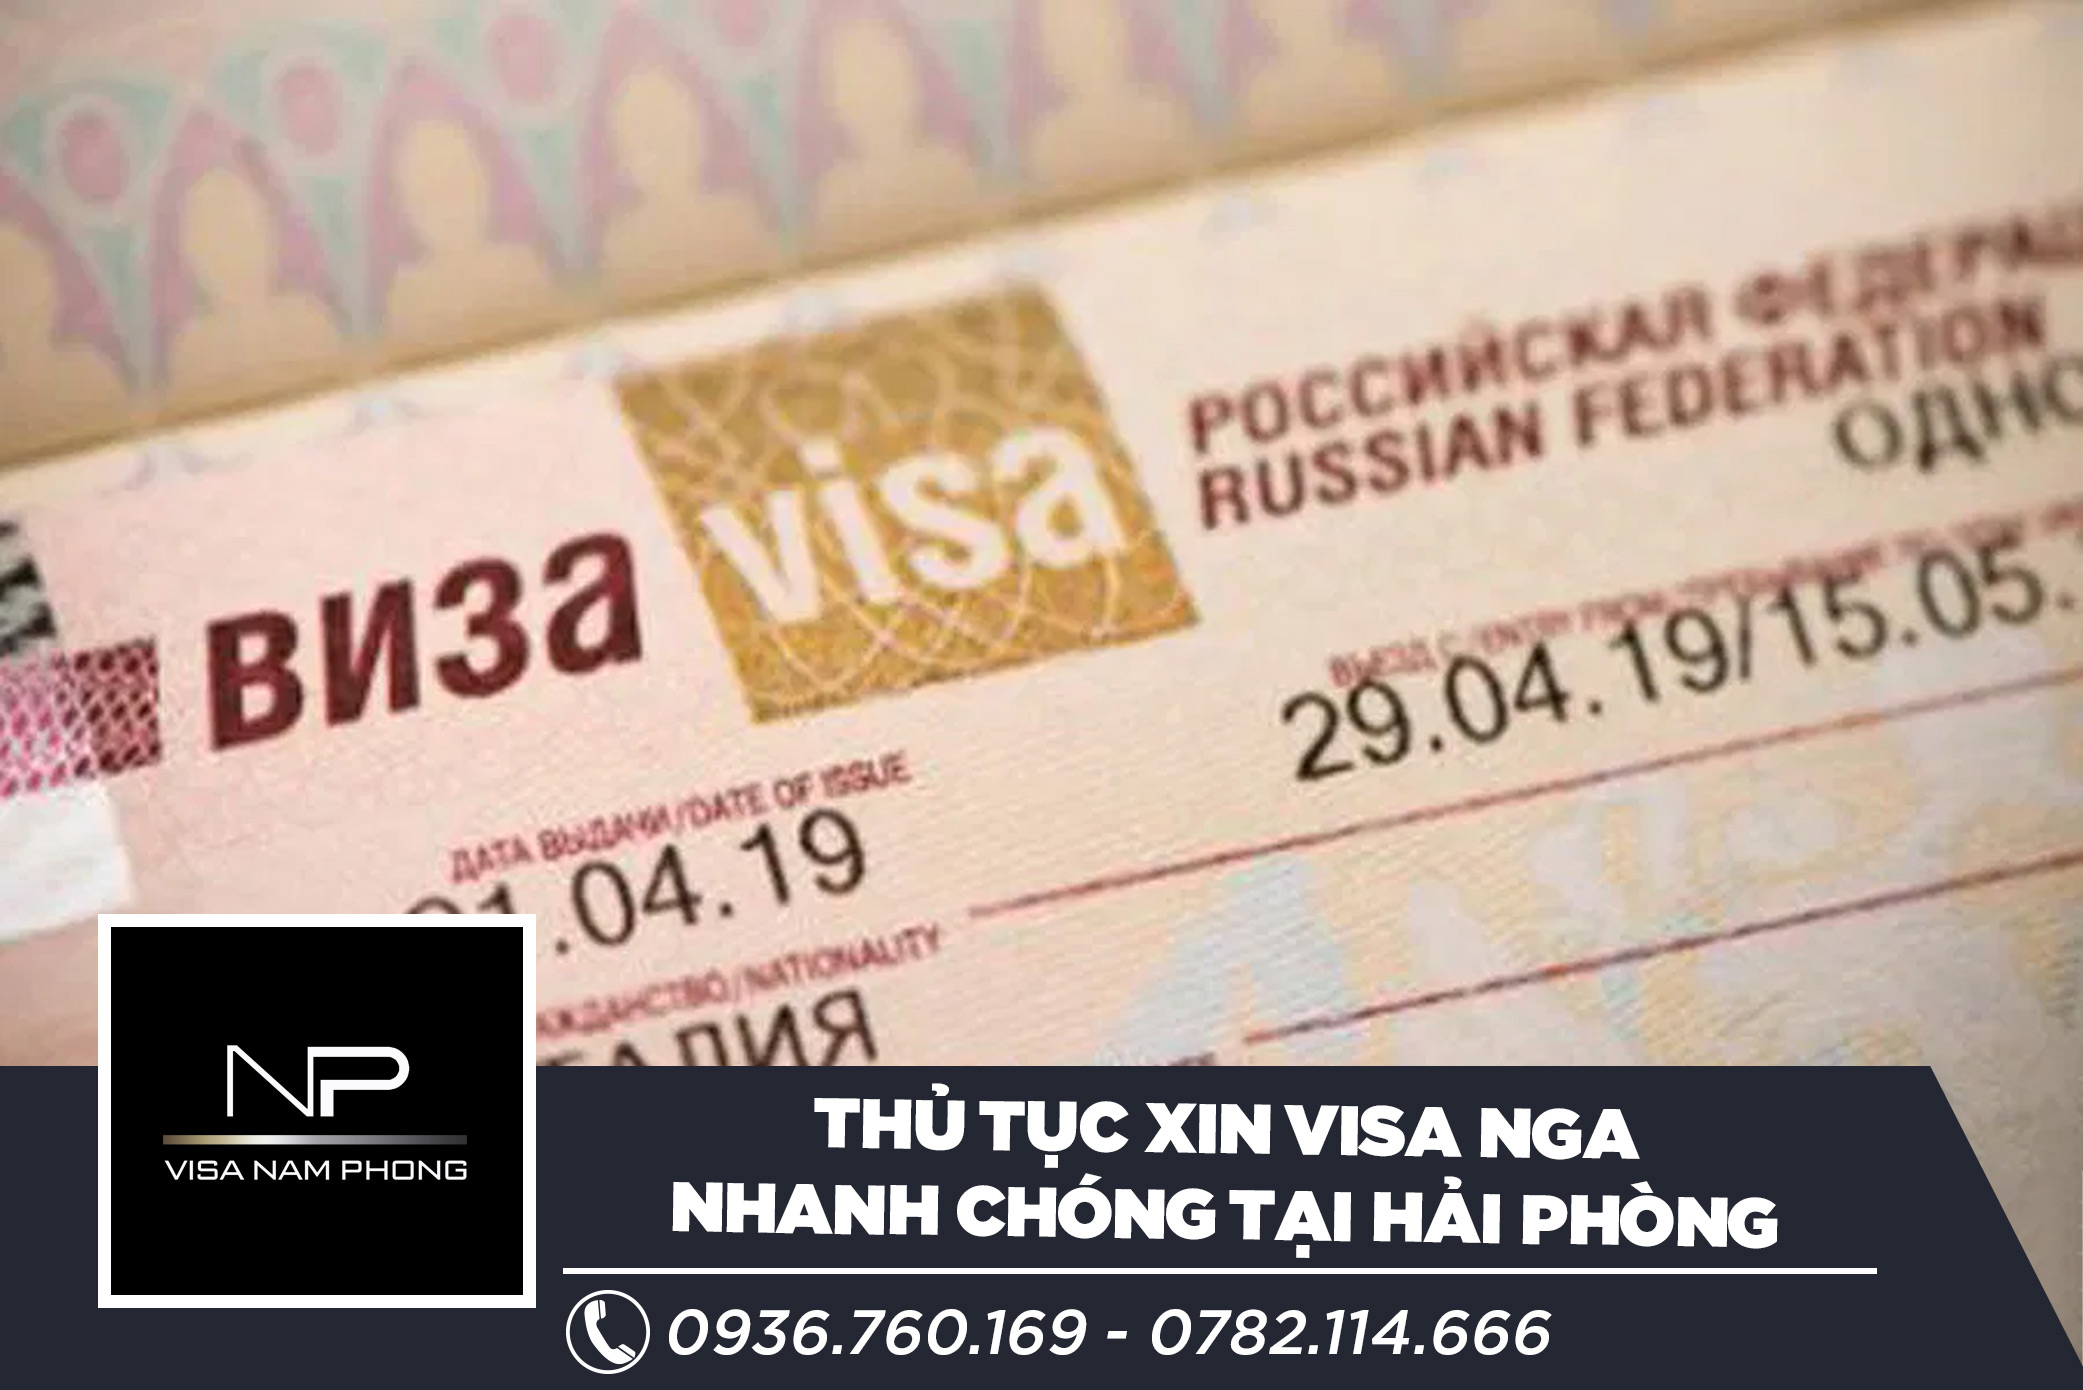 Thủ tục xin visa Nga nhanh chóng tại Hải Phòng